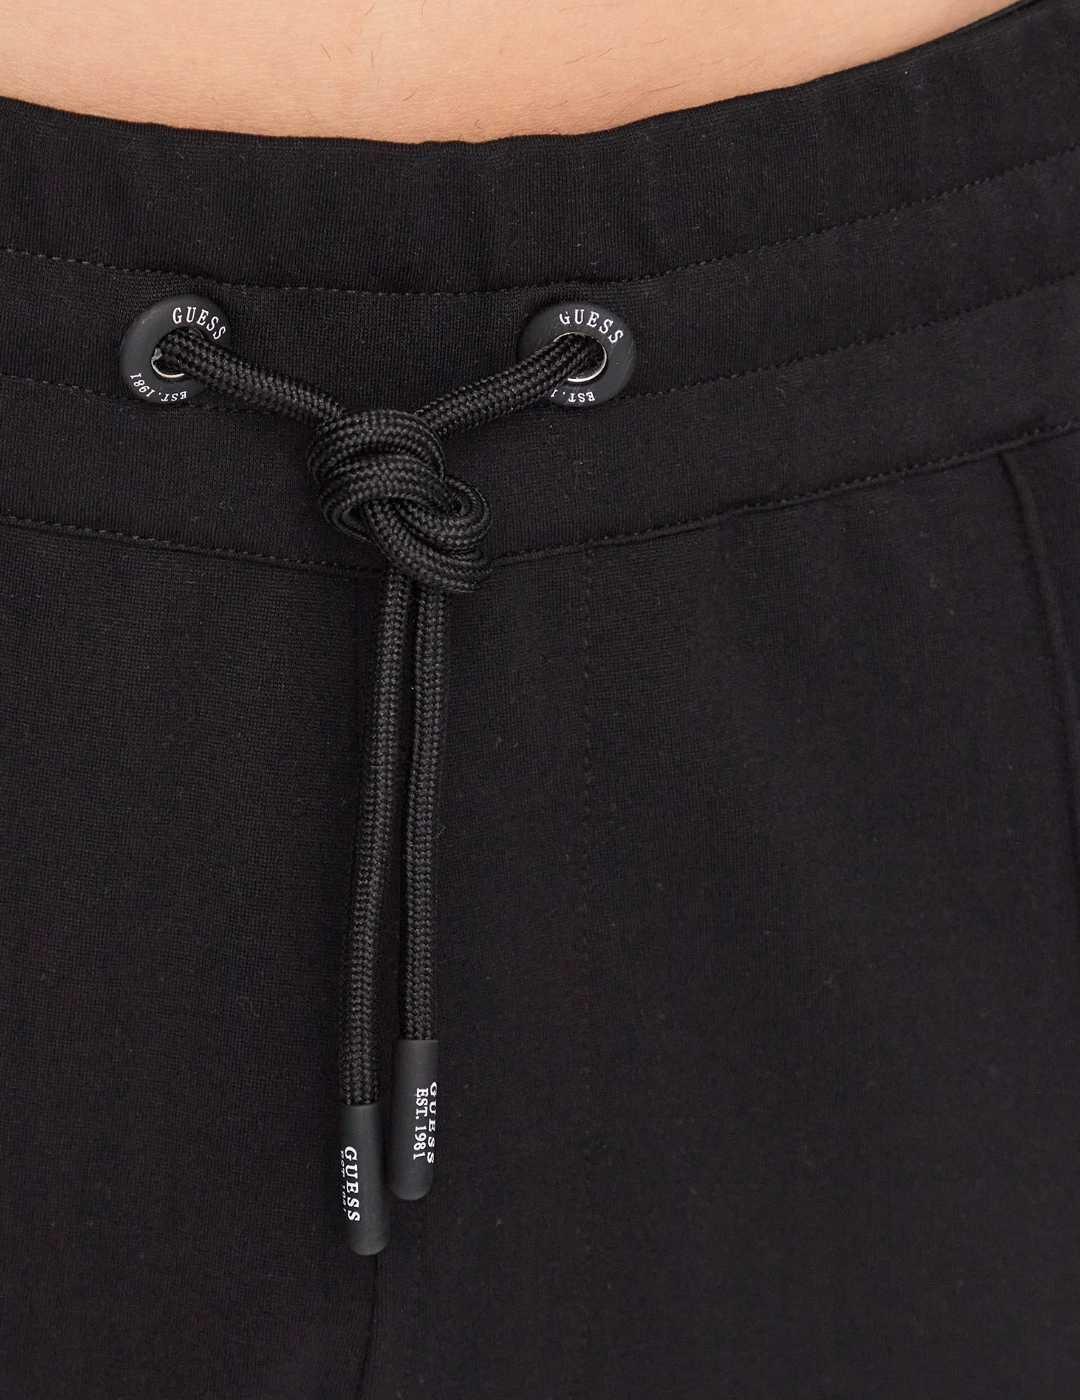 Pantalón Guess Monaco negro de tela ajustable para hombre